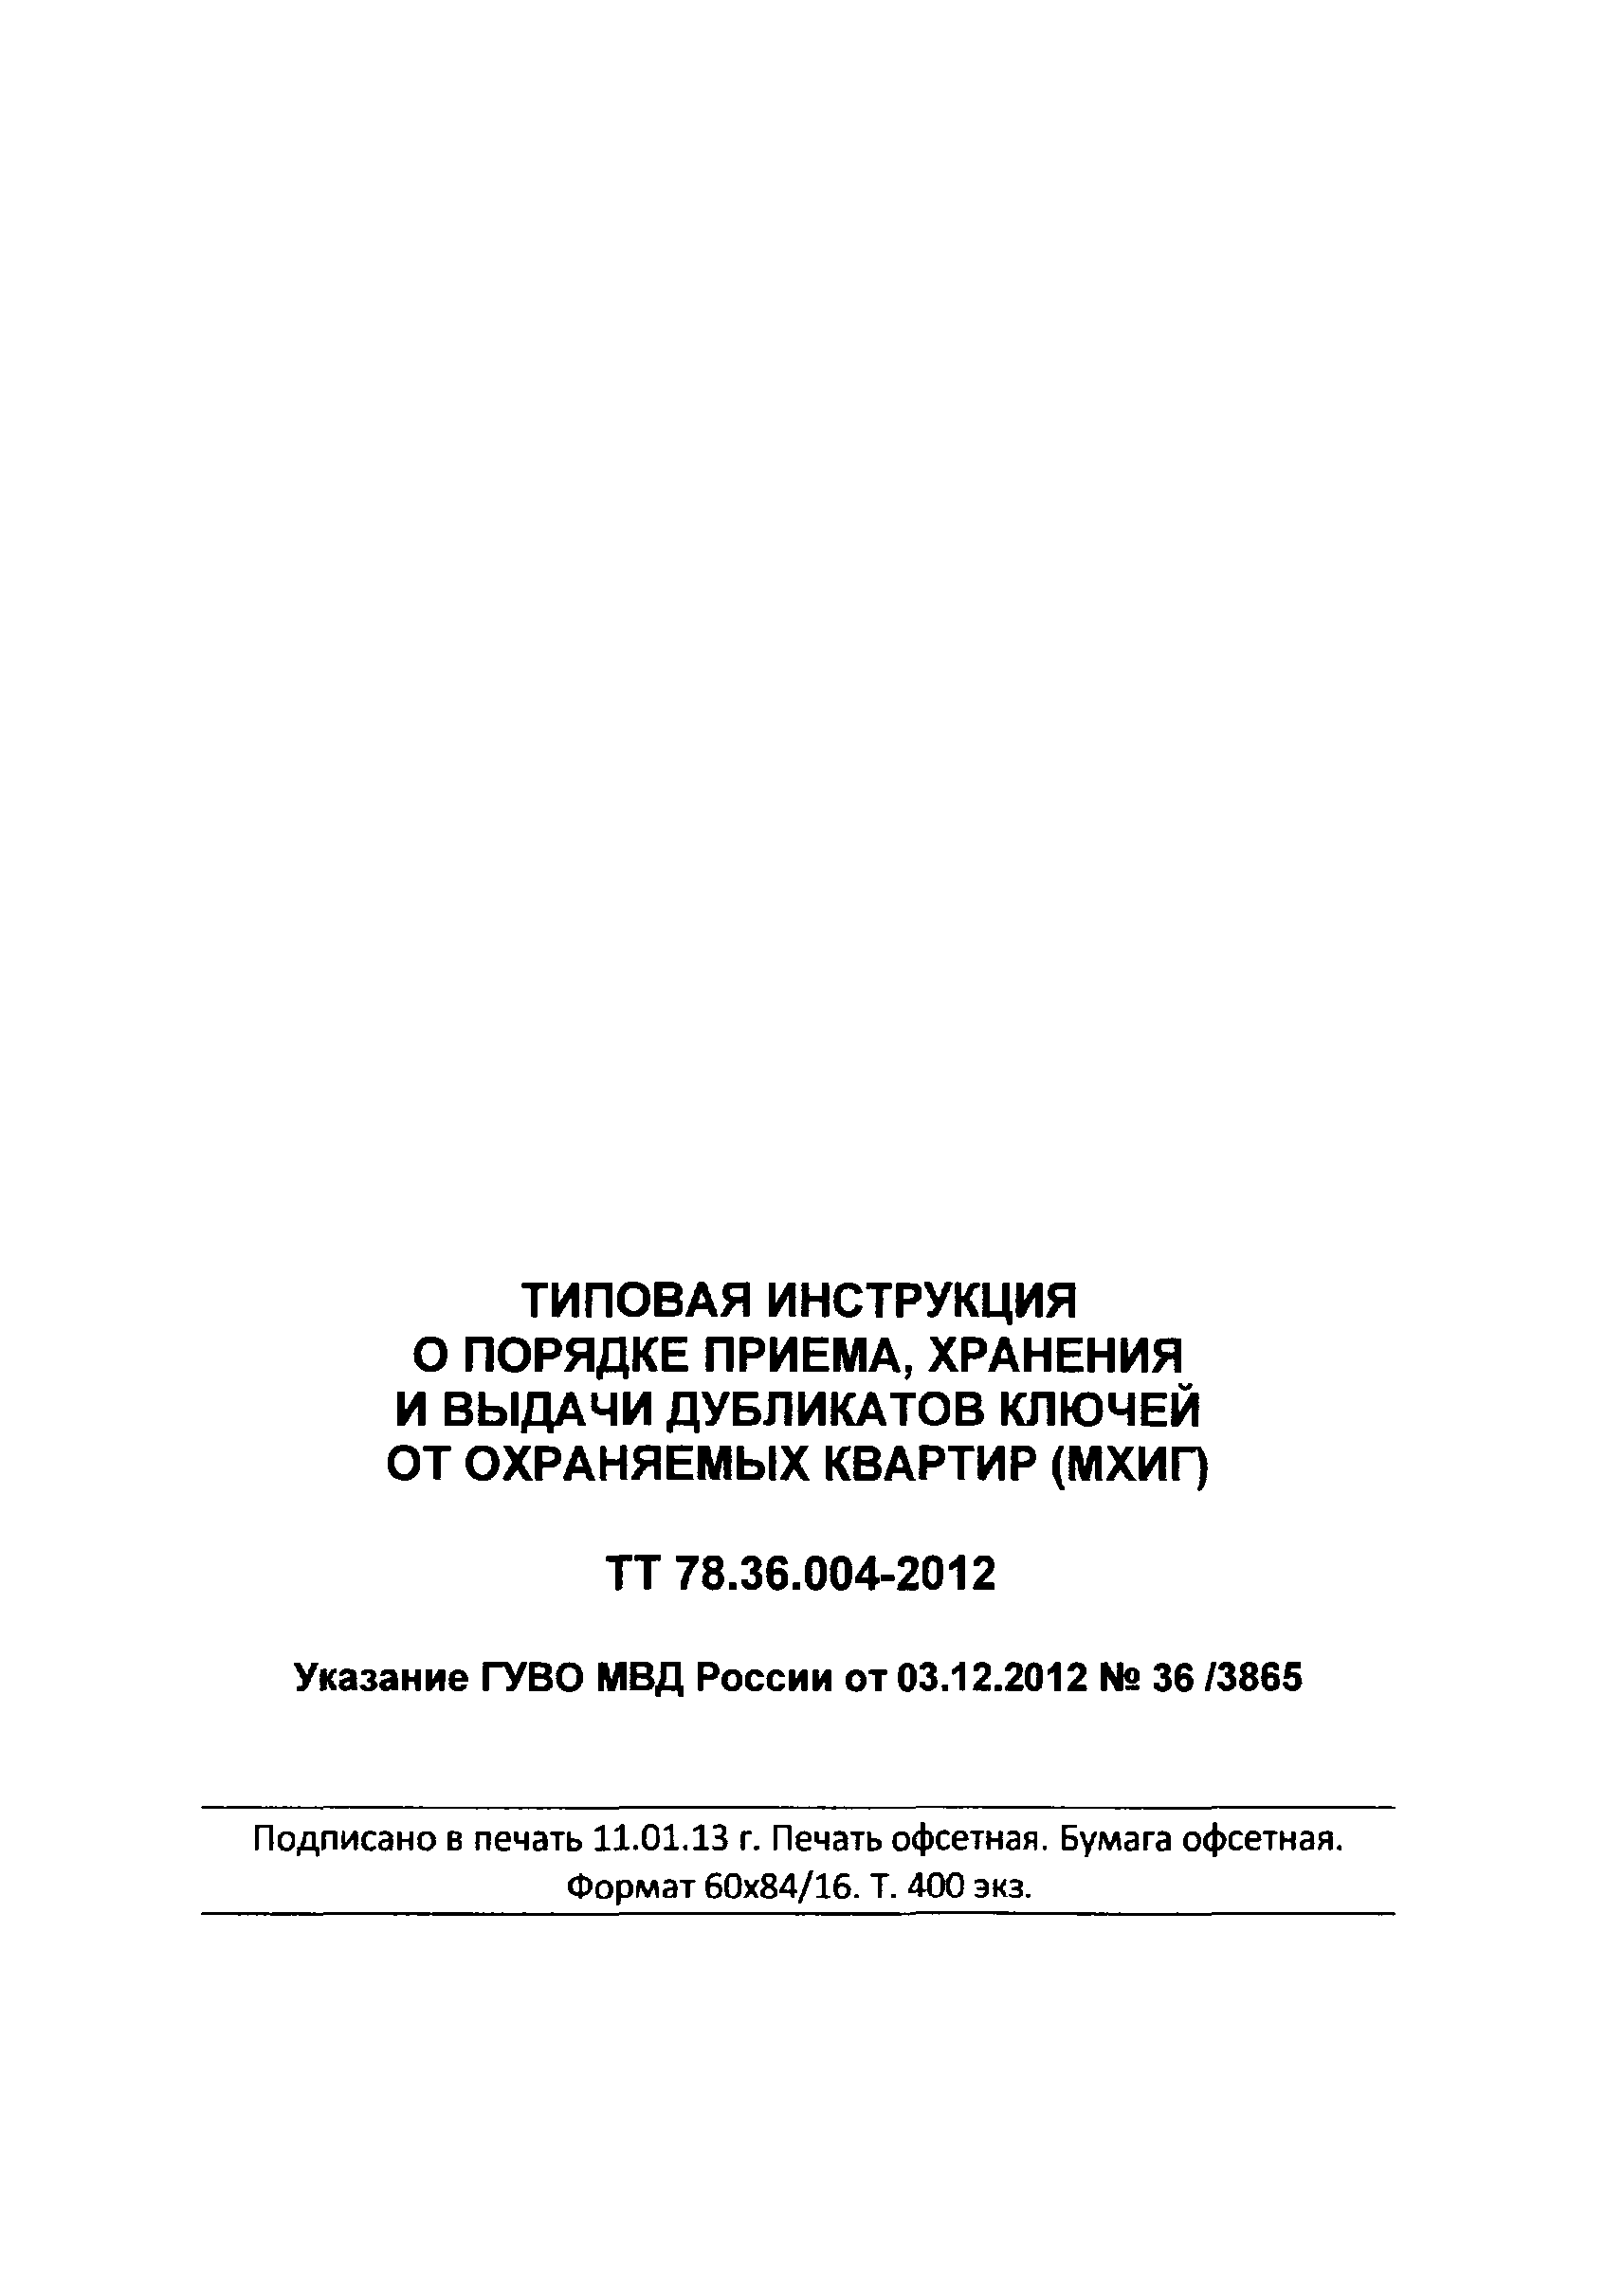 ТТ 78.36.004-2012